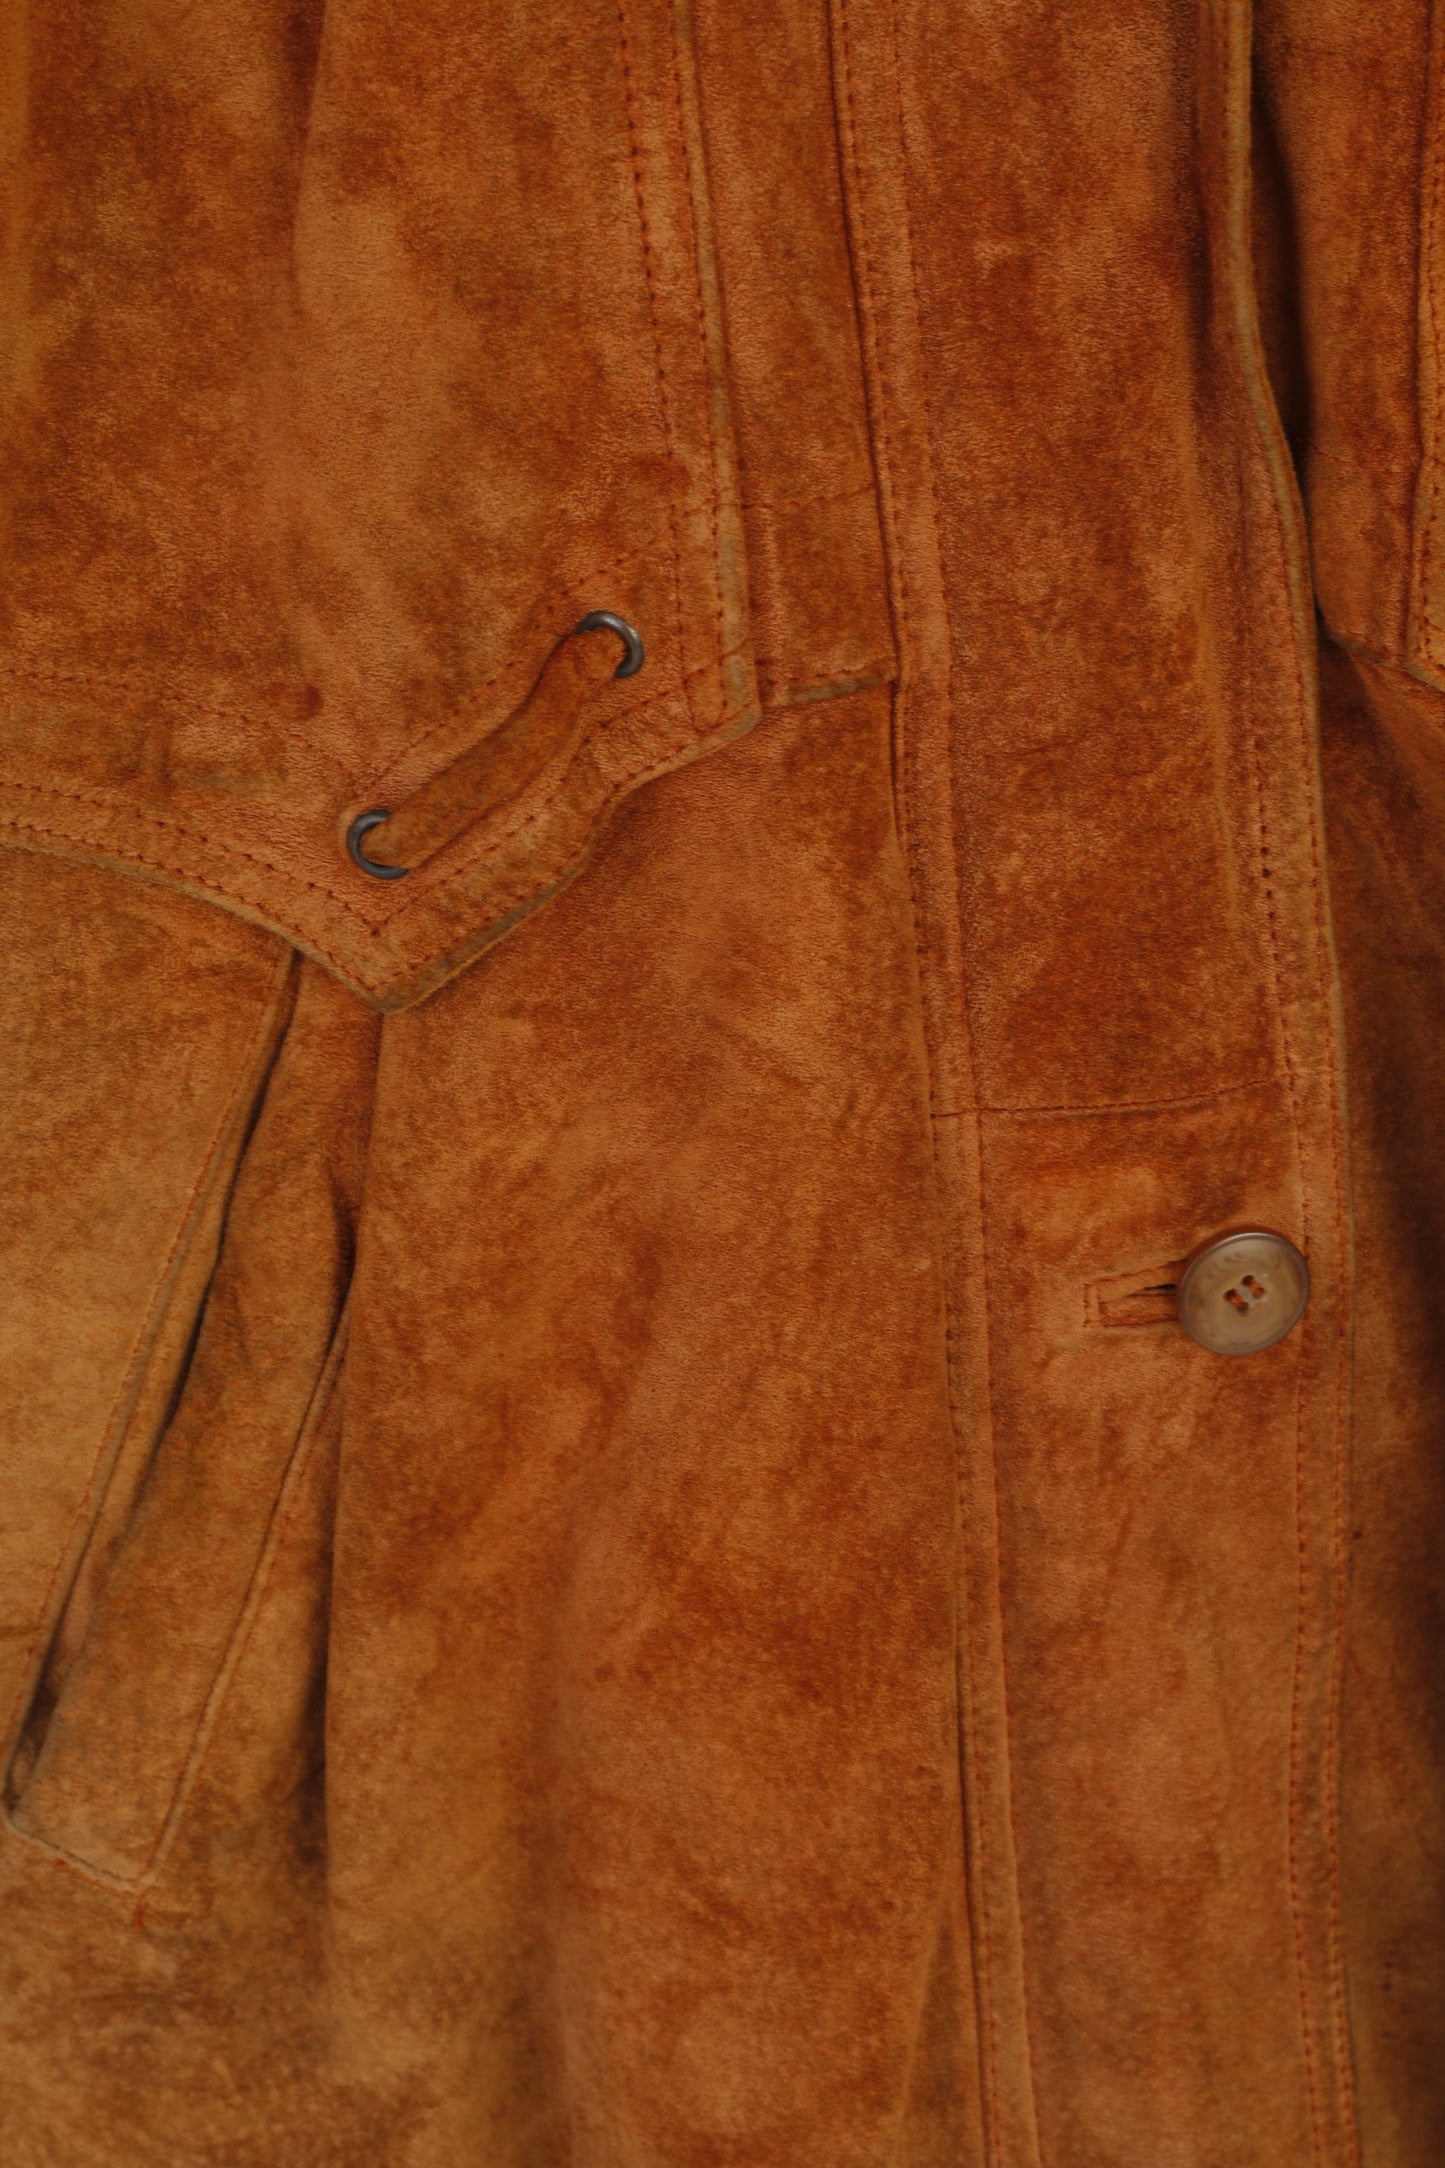 Vroom & Dreesmann Women 42 16 XL Jacket Camel Leather Vintage Shoulder Pads Top